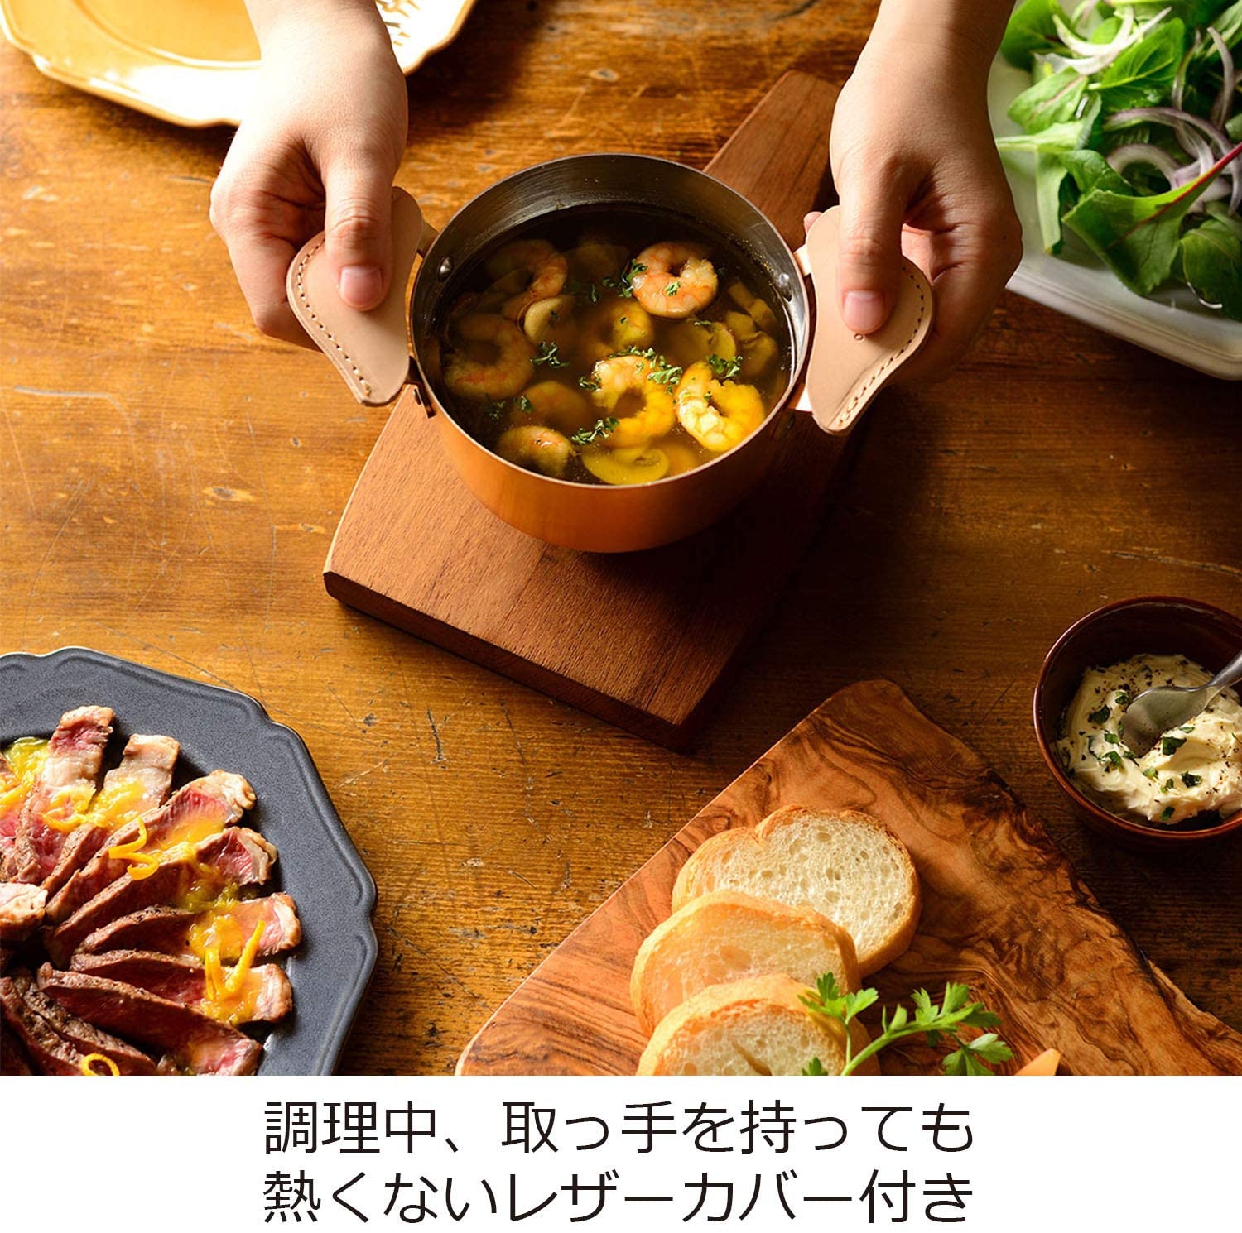 ameiro(アメイロ) 小鍋の商品画像5 